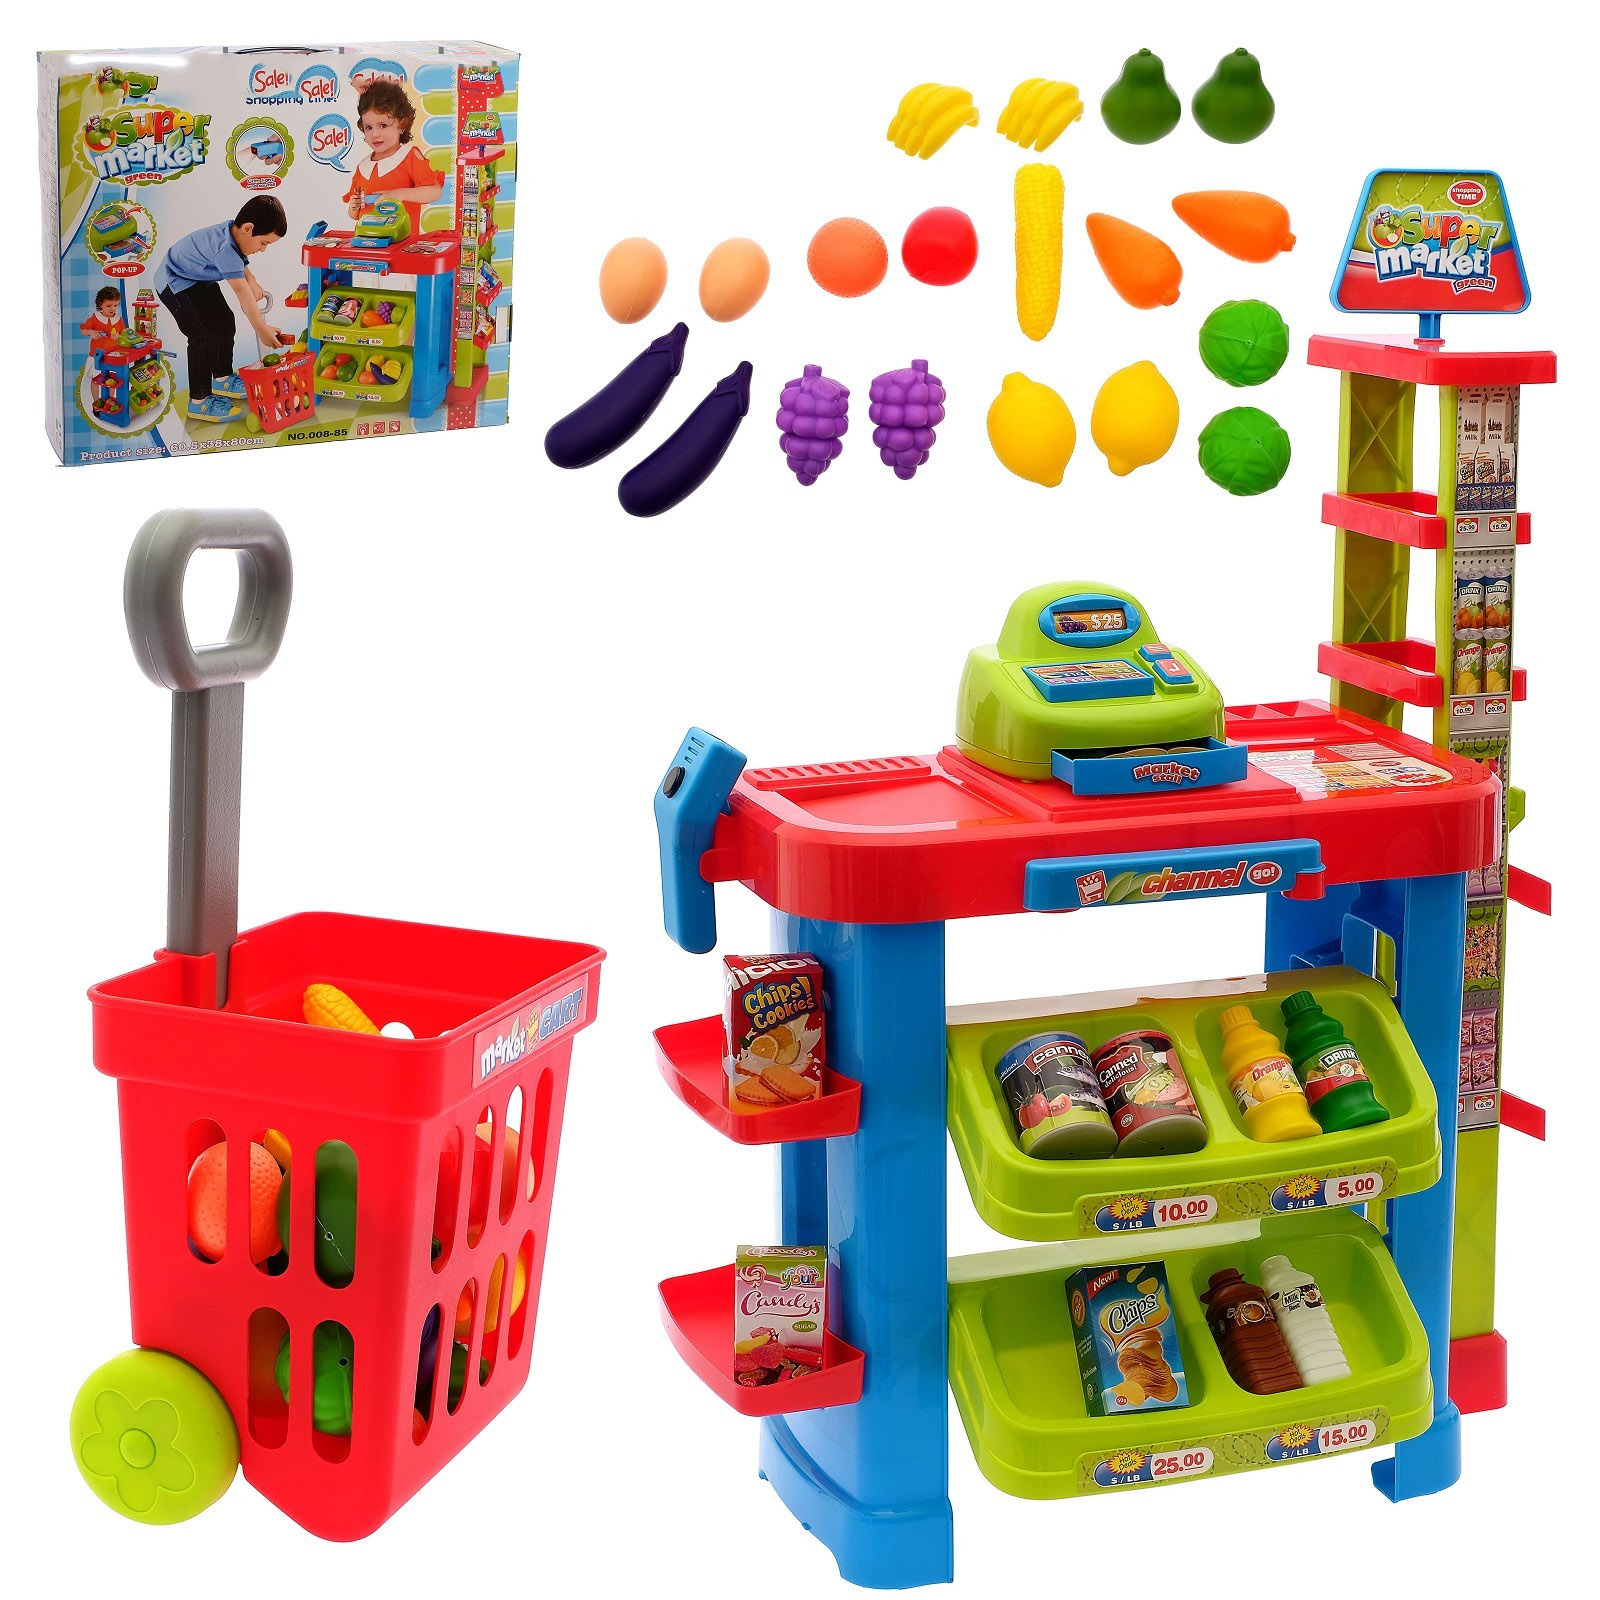 Игрушки детям в садик. Игрушки для детского сада. Игровой набор магазин. Набор игрушек для детей. Игровые наборы для детей.